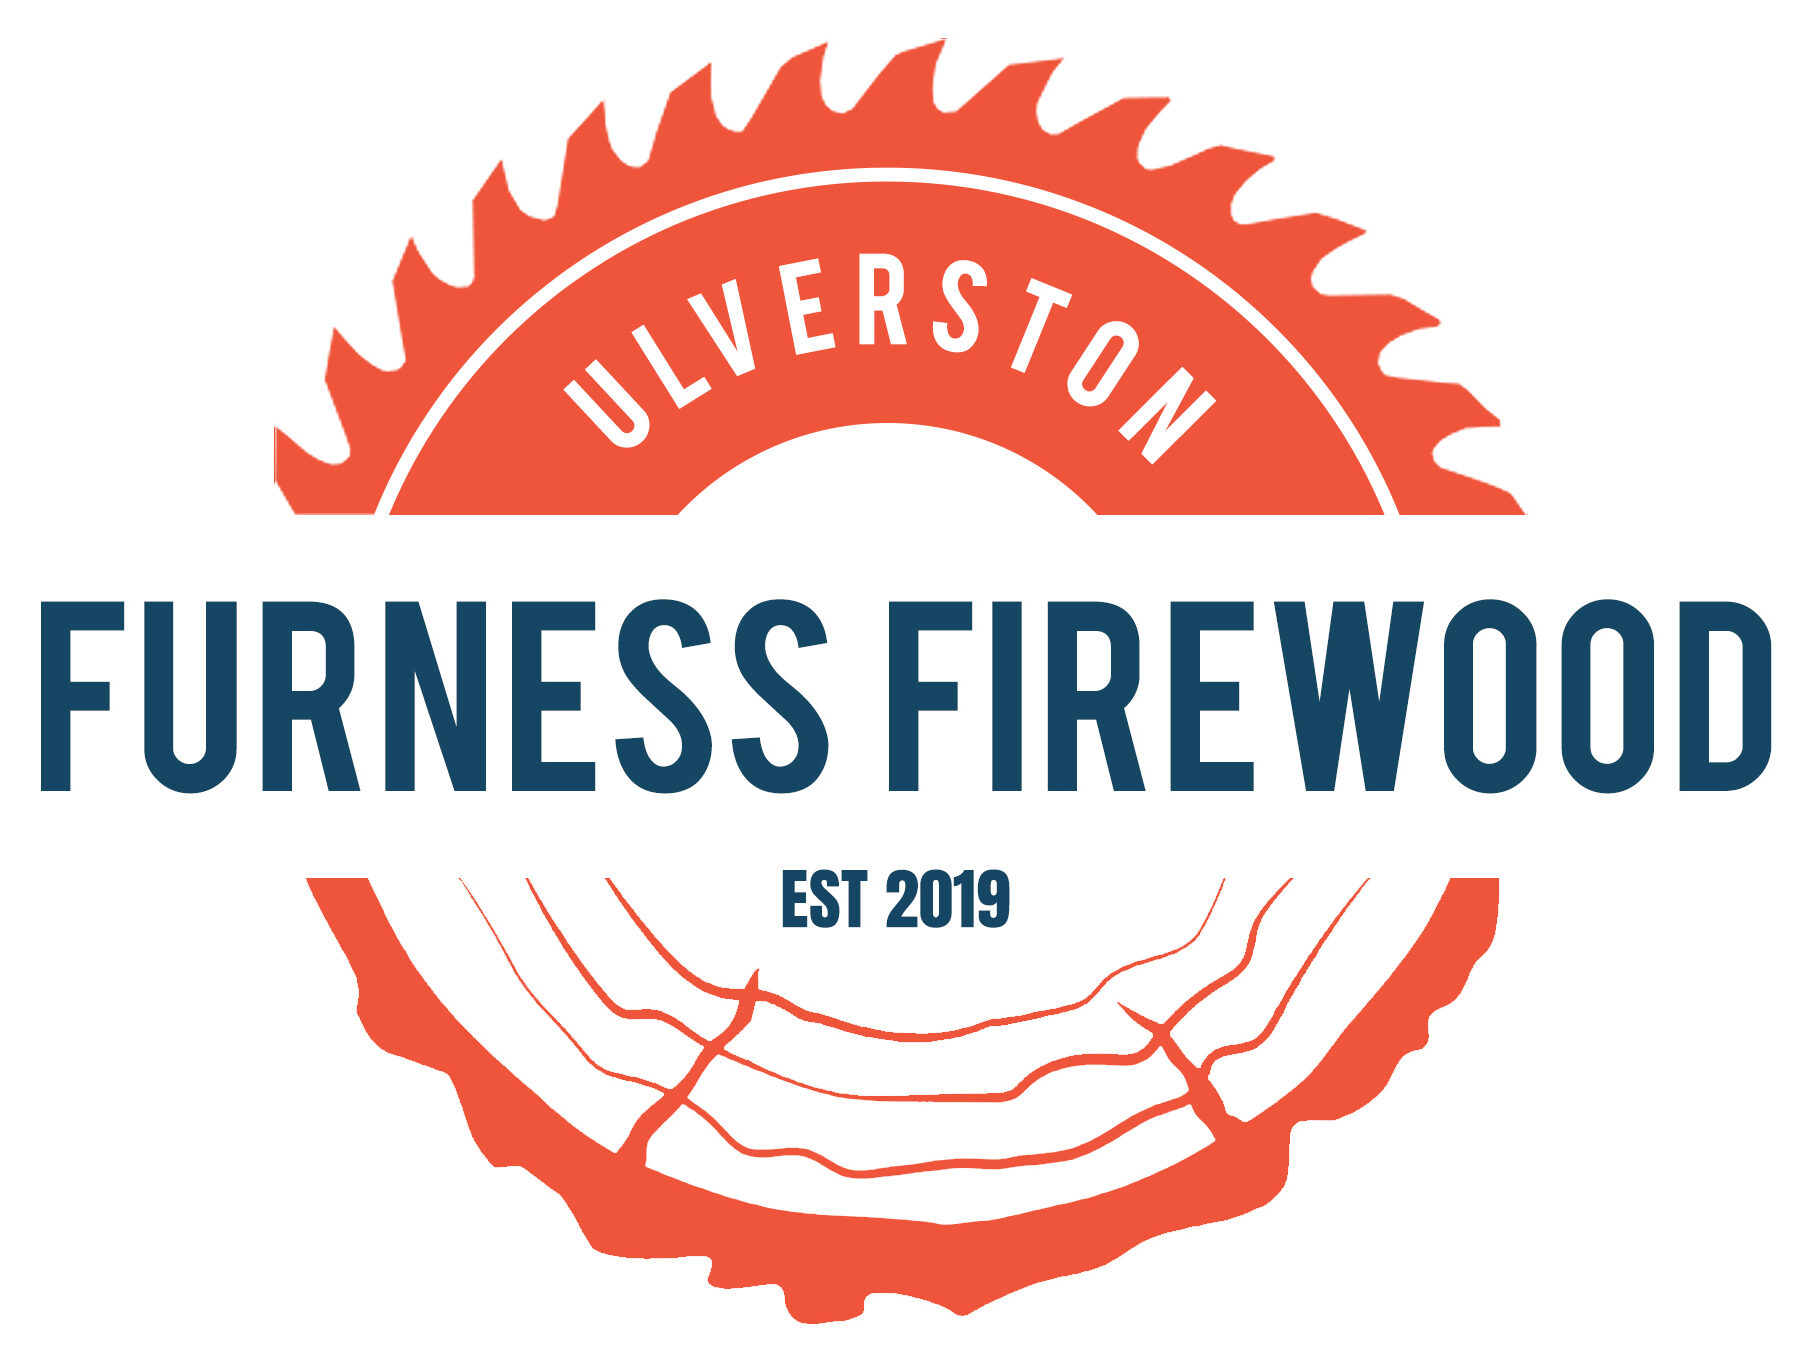 Furness Firewood